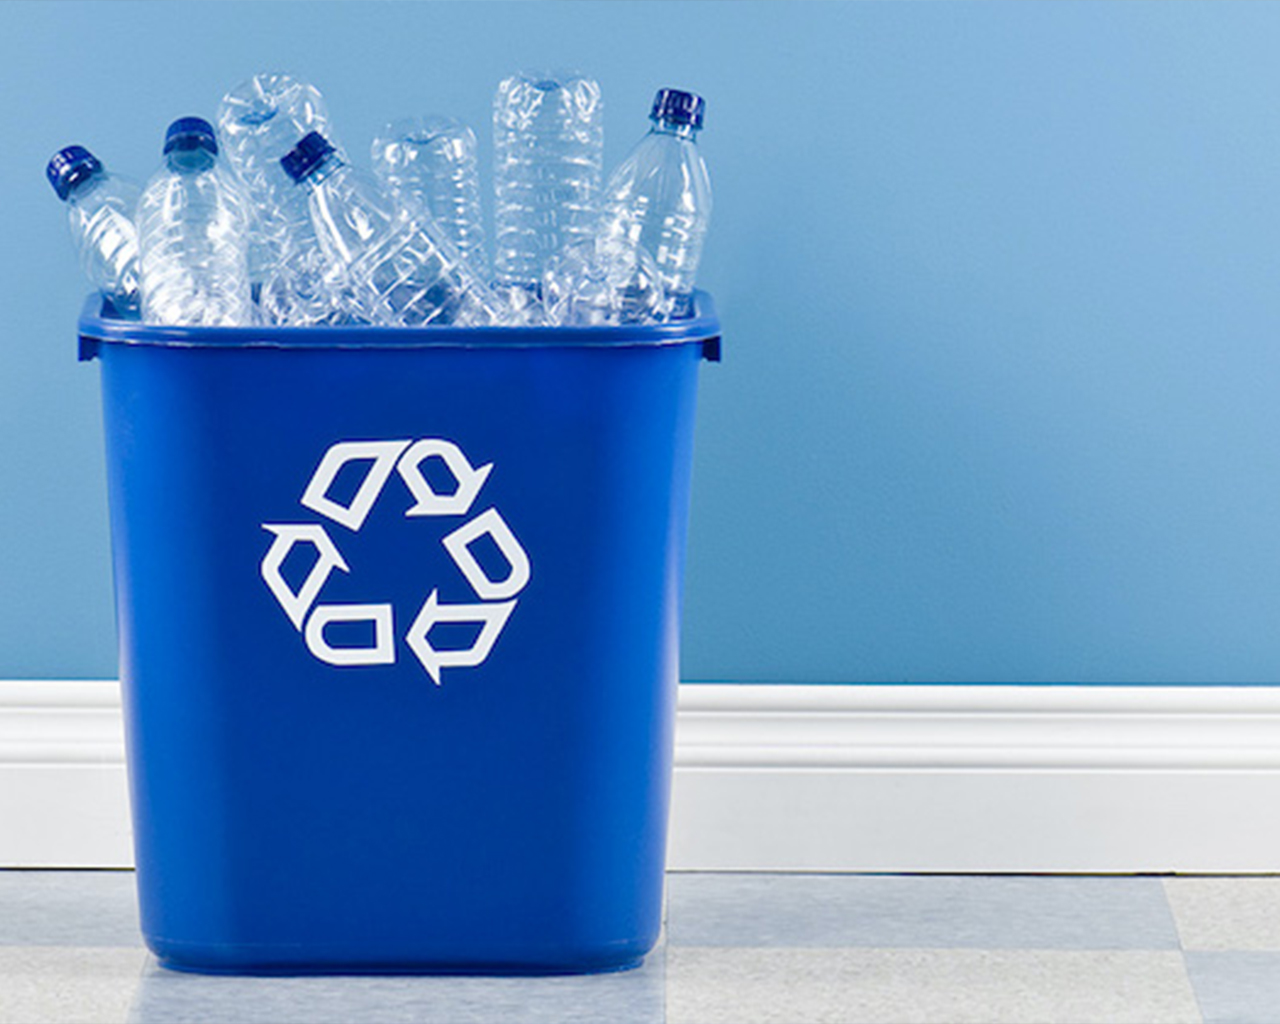 Cestino della differenziata con simbolo del riciclo e bottiglie di plastica al suo interno.